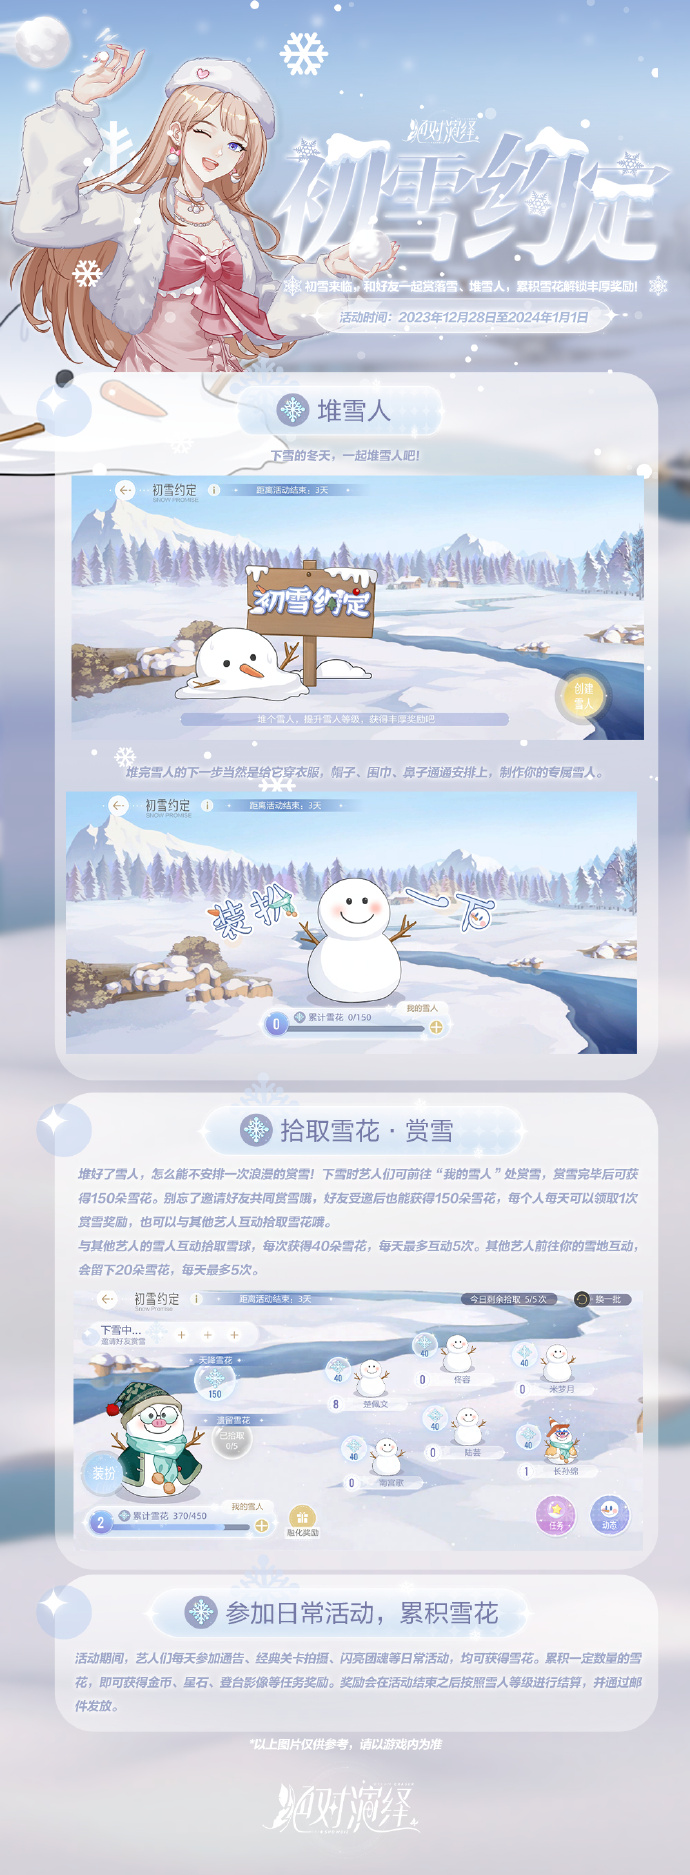 《绝对演绎》12月28日“初雪约定”活动上线